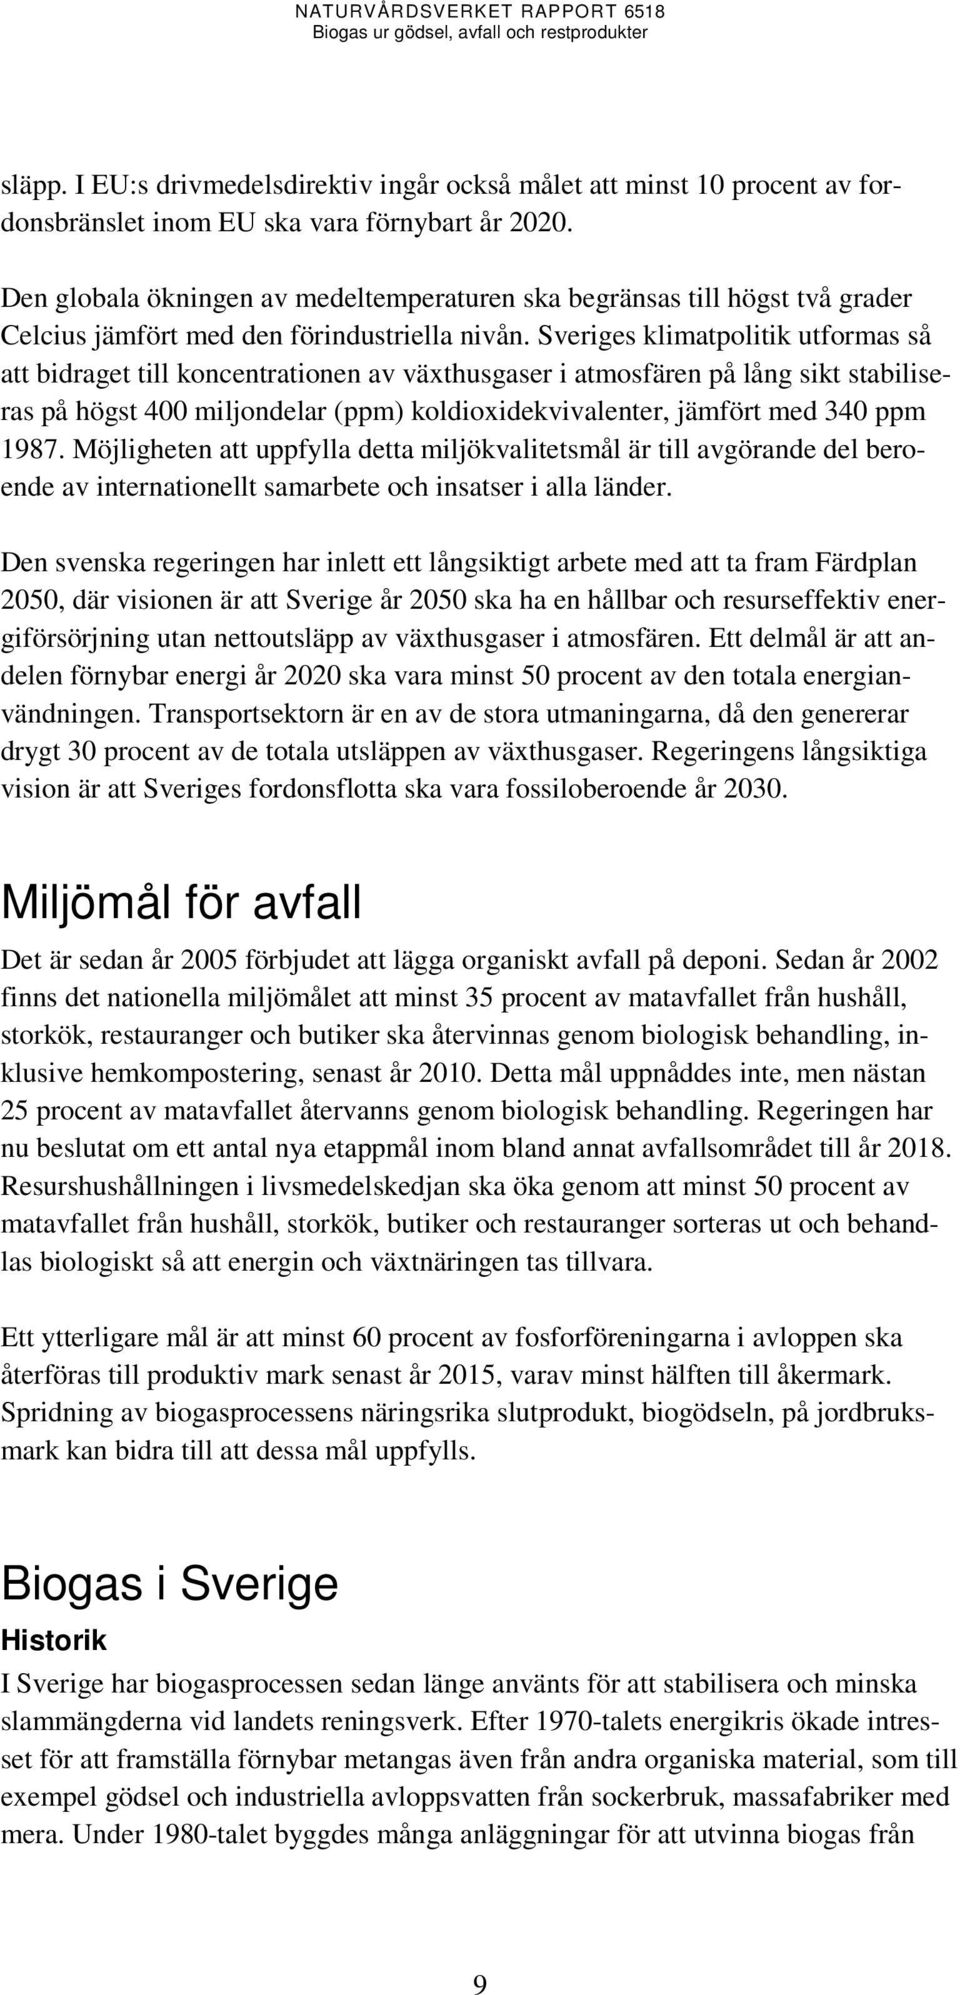 Sveriges klimatpolitik utformas så att bidraget till koncentrationen av växthusgaser i atmosfären på lång sikt stabiliseras på högst 400 miljondelar (ppm) koldioxidekvivalenter, jämfört med 340 ppm